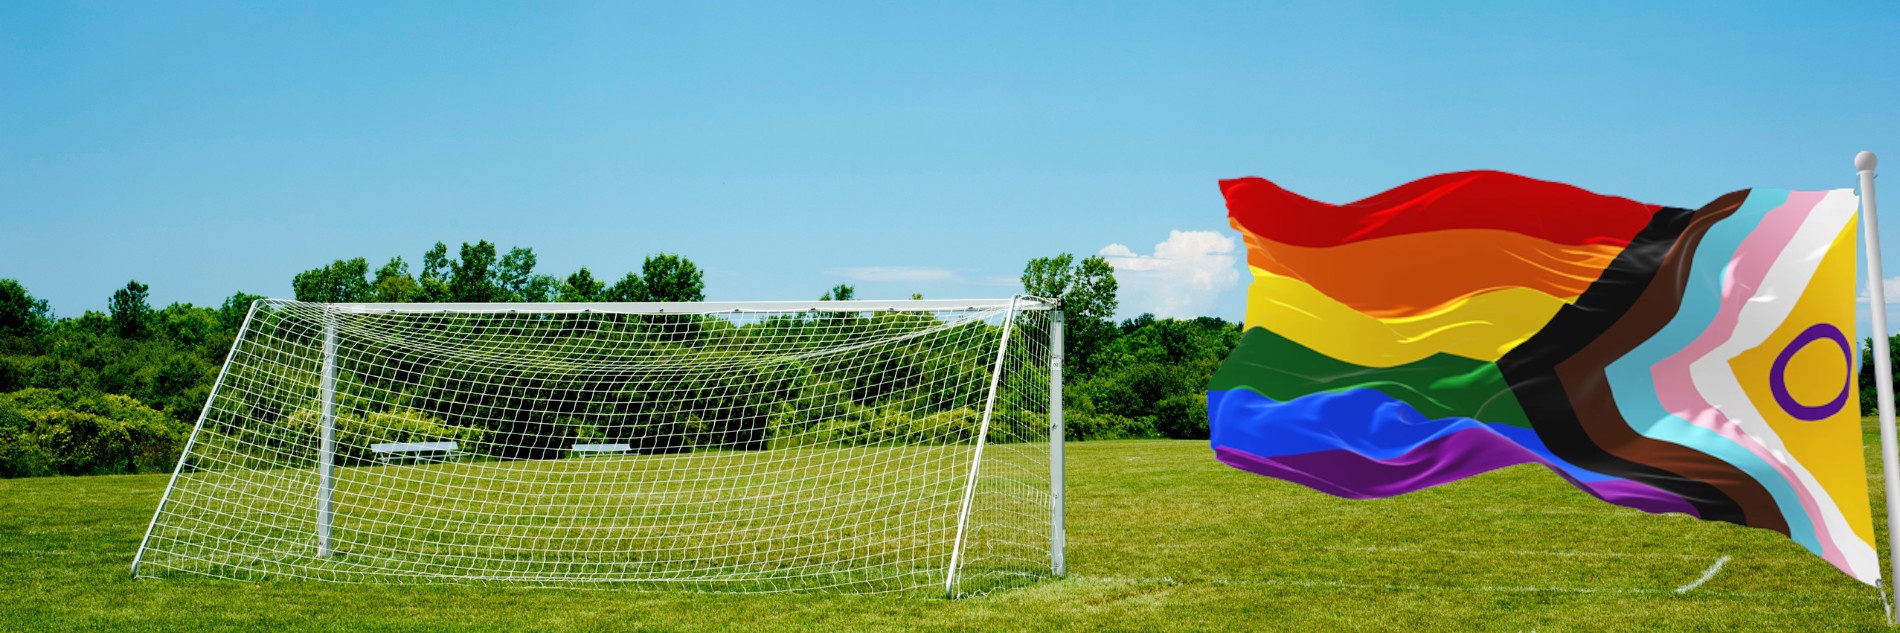 Die Regenbogenflagge ist die Flagge der „LGBTIAQ+“-Gemeinschaft vorm blauen Himmel. Daneben ein Fußballfeld.